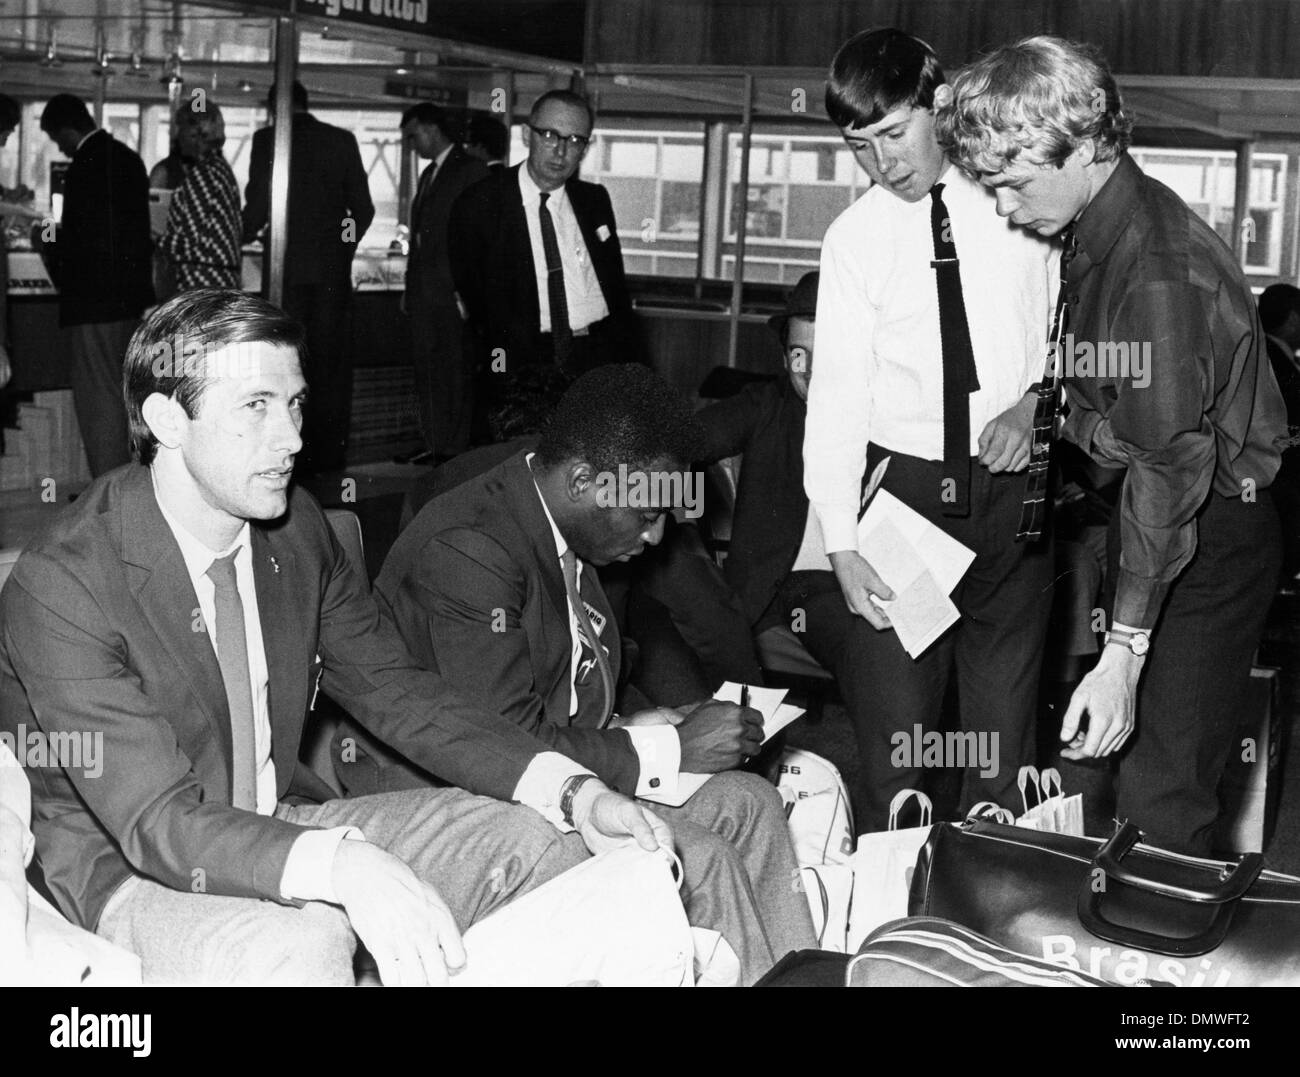 Luglio 24, 1966 - Londra, Inghilterra, Regno Unito - Brasiliano giocatore di calcio EDSON NASCIMENTO 'PELE' firma autografi per i fan all'Aeroporto di Londra. (Credito Immagine: © Keystone Pictures USA/ZUMAPRESS.com) Foto Stock